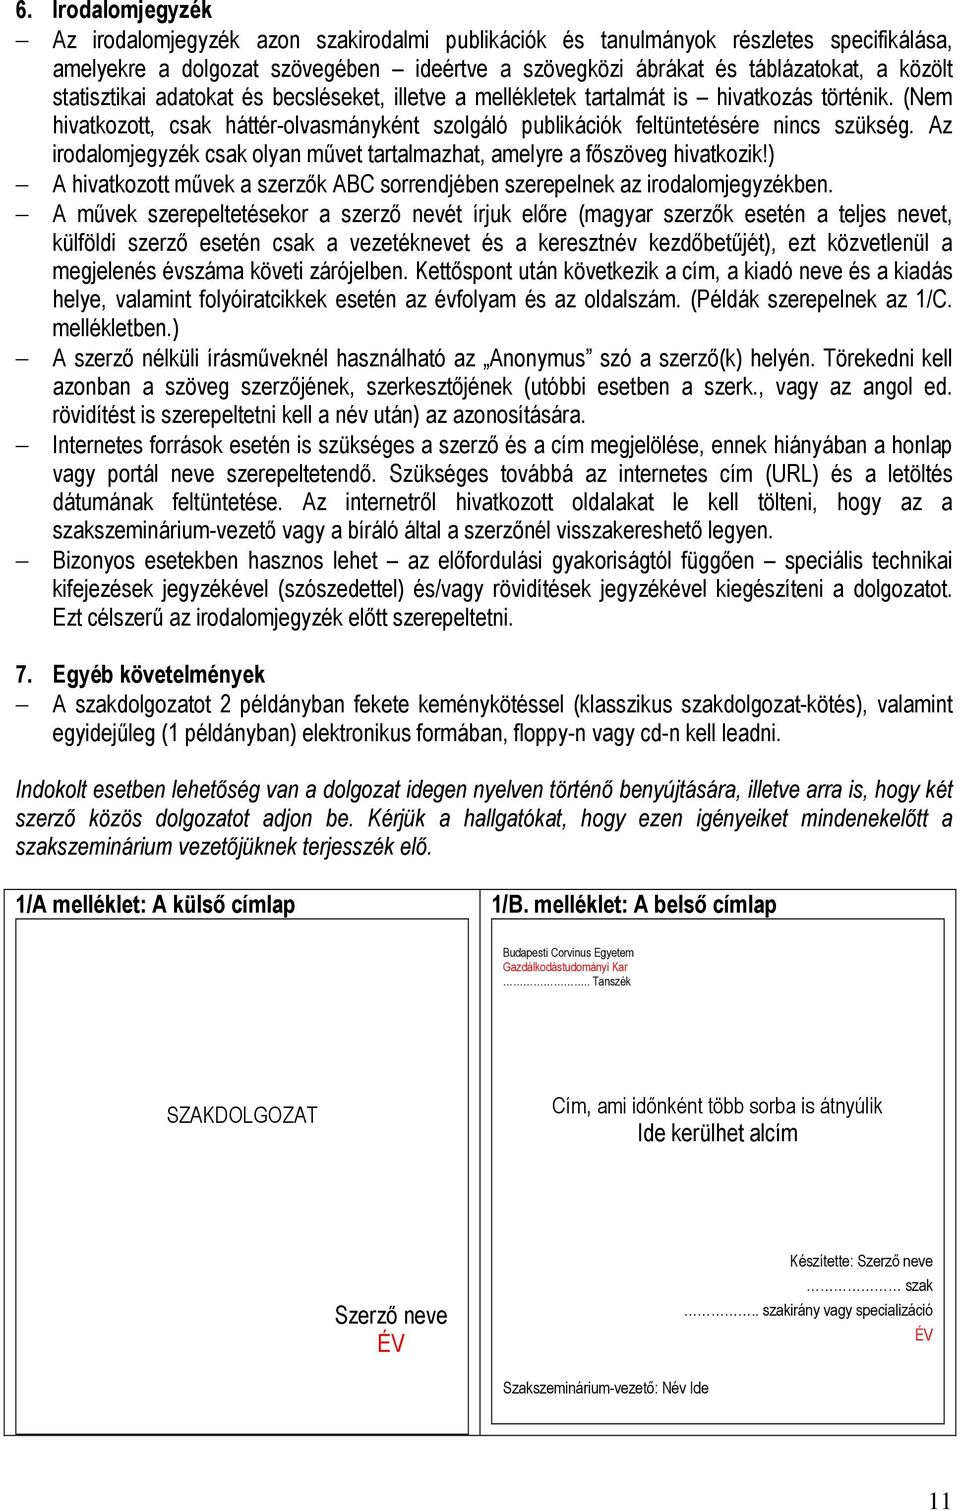 Tanulmányi és Vizsgaszabályzat Gazdálkodástudományi Kar Melléklet 1 - PDF  Free Download